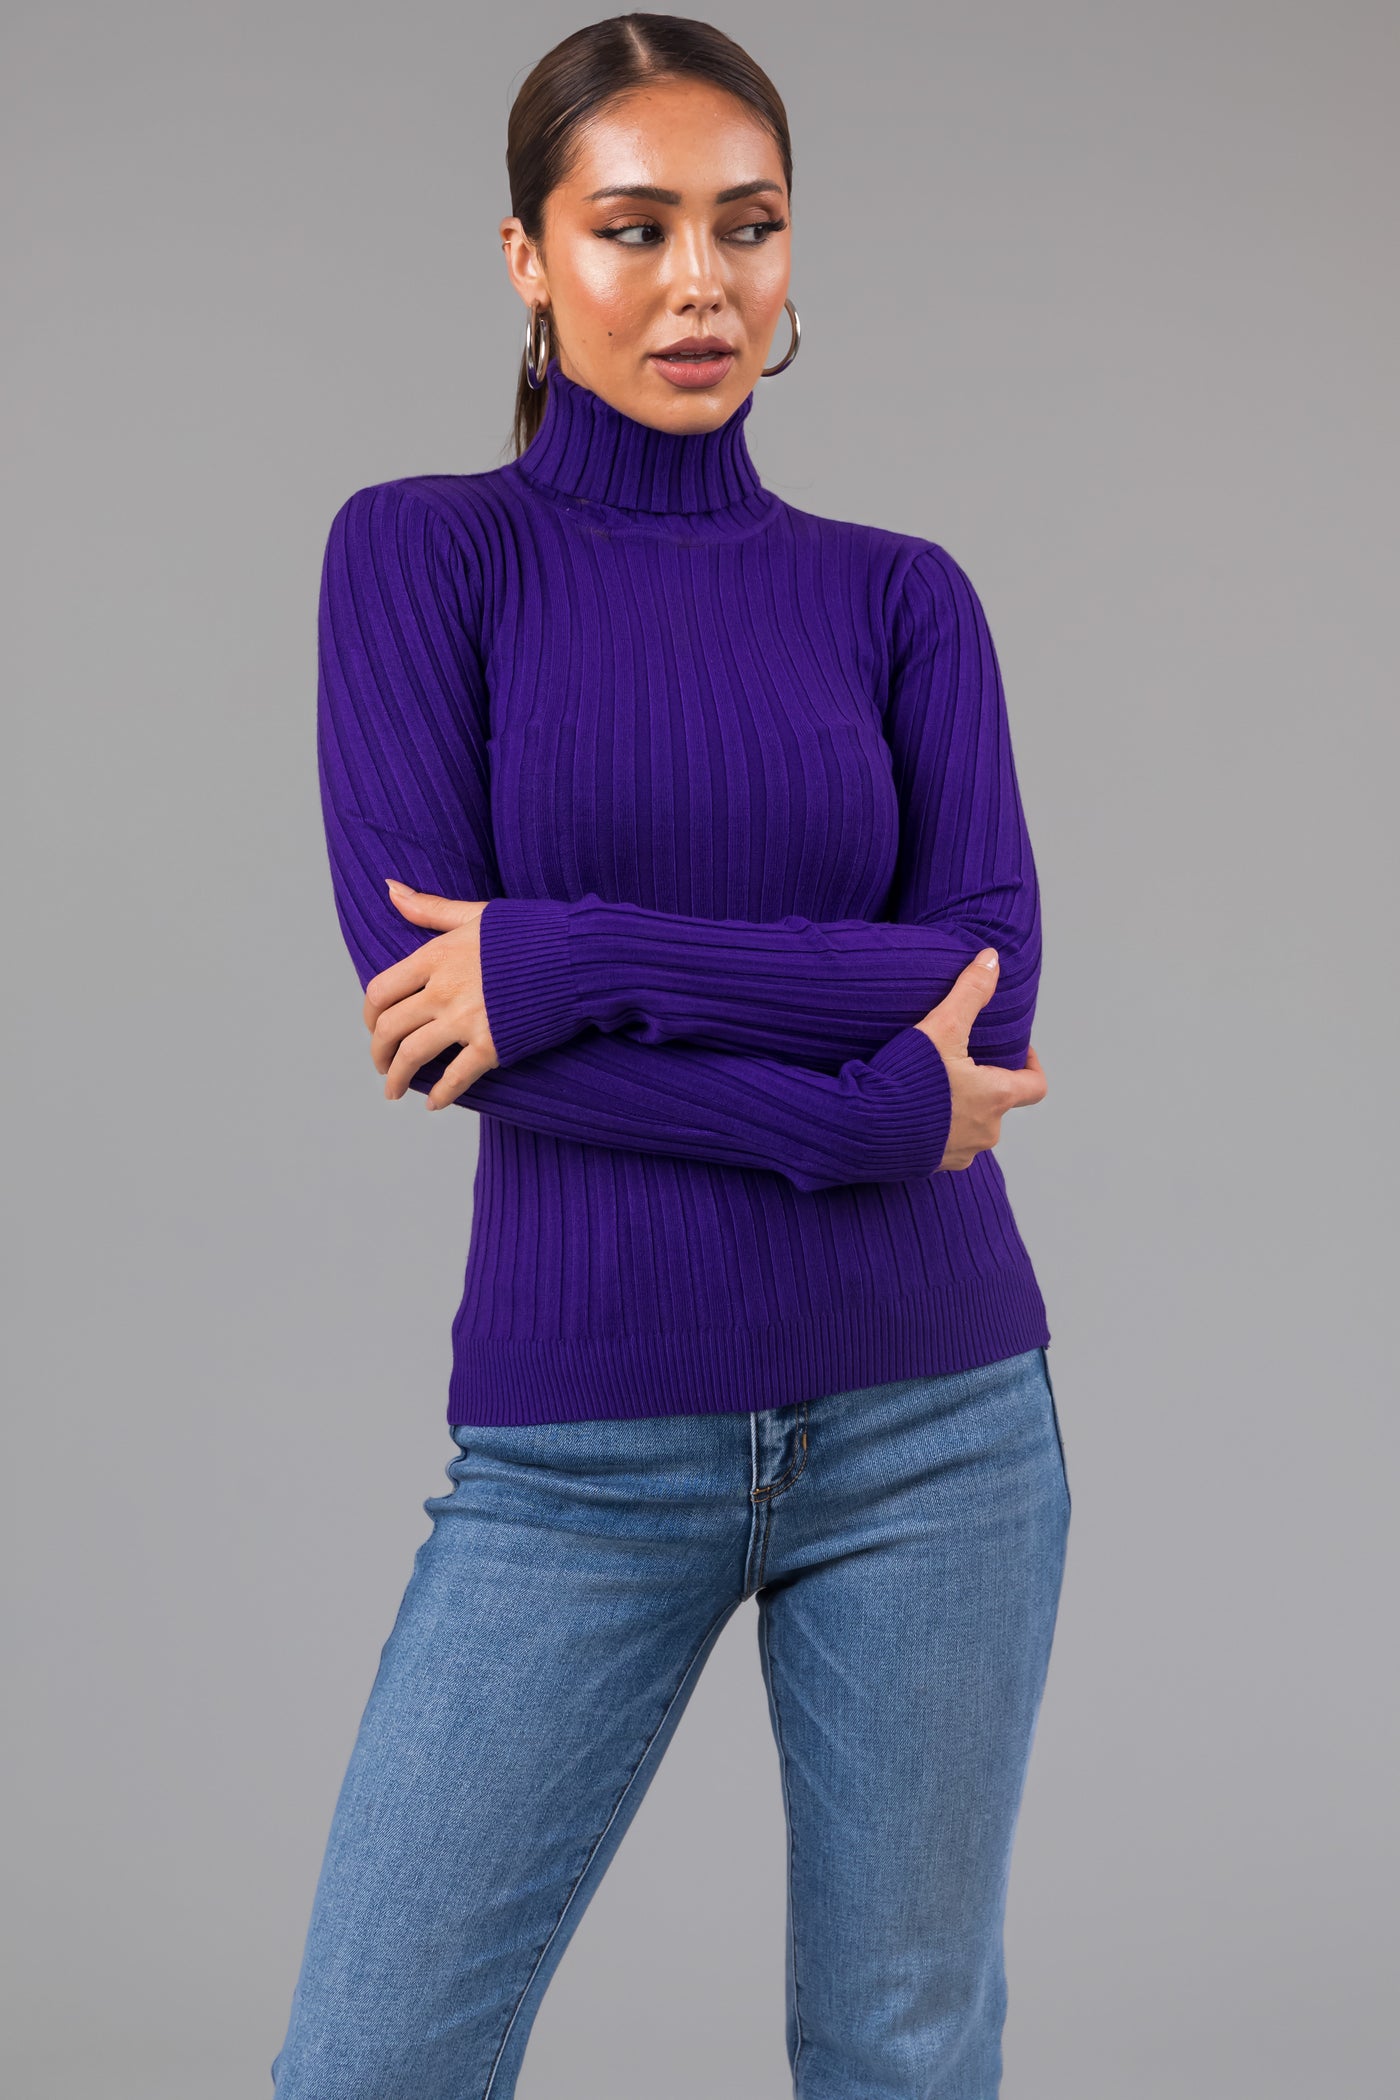 Purple Turtleneck Long Sleeve Knit Sweater